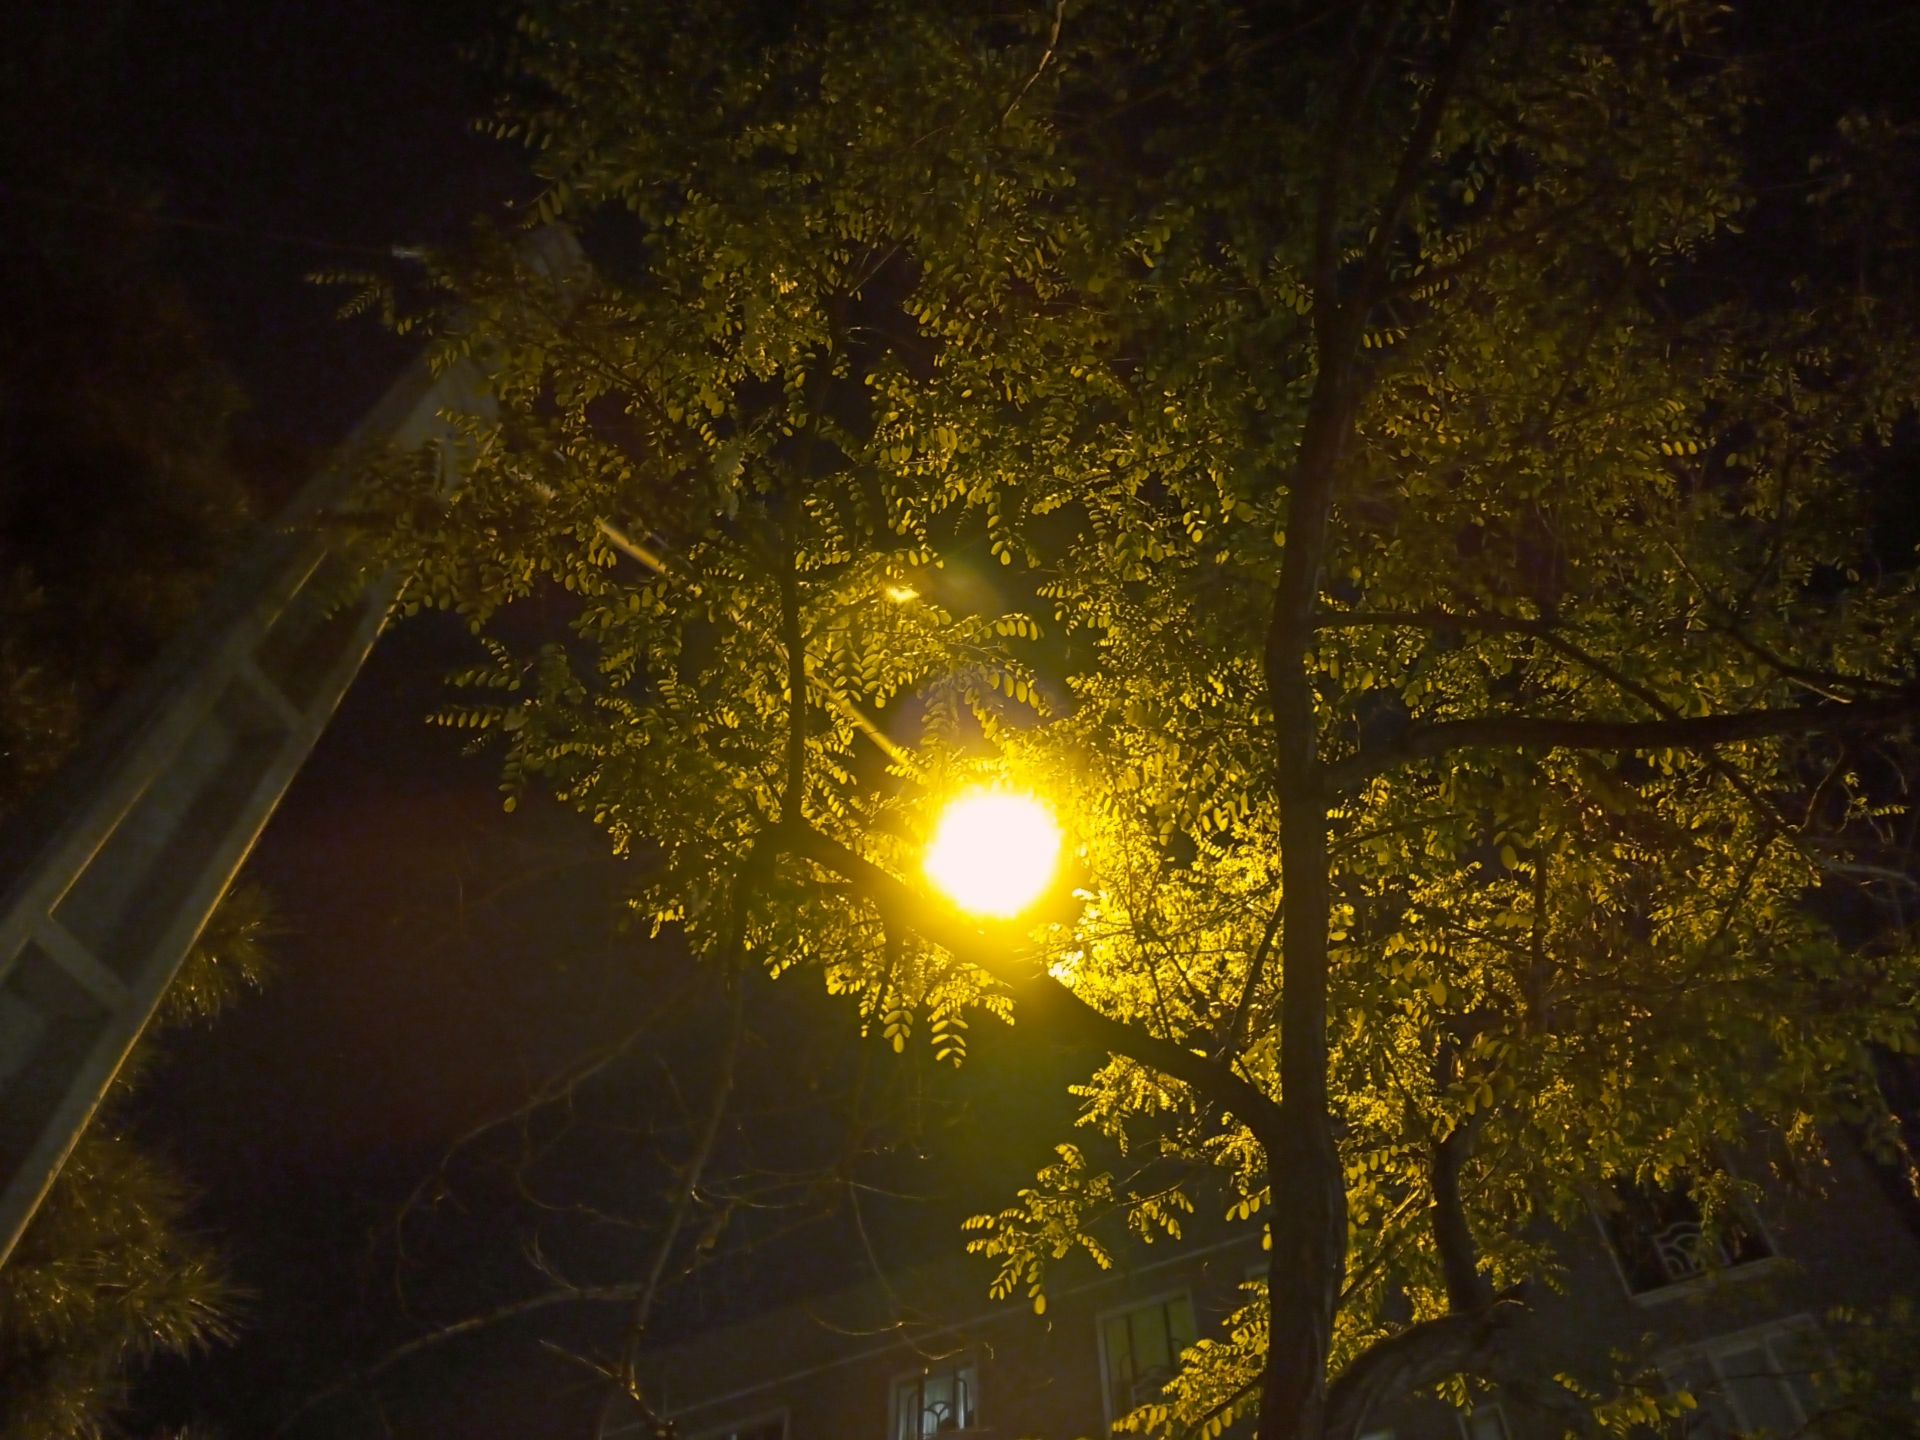 مرجع متخصصين ايران نمونه عكس دوربين اصلي ال جي K51S در شب - ماه در بين درختان